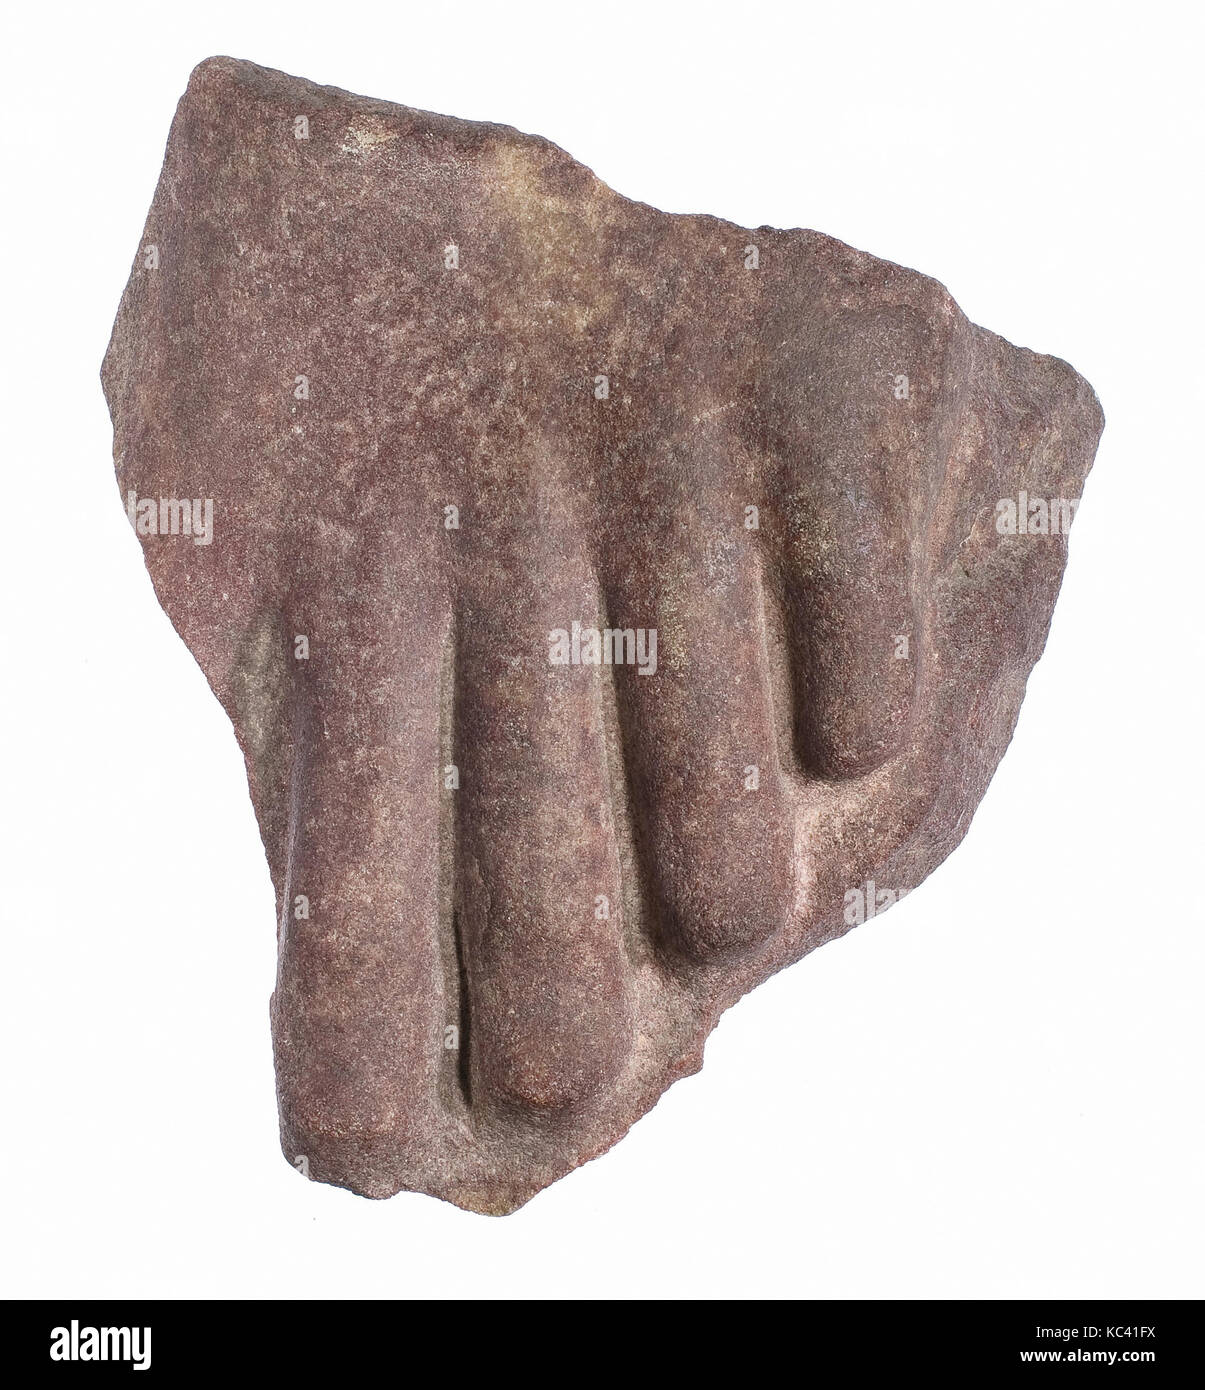 Le dita dei piedi dal piede sinistro di una statua, ca. 1353-1336 A.C. Foto Stock